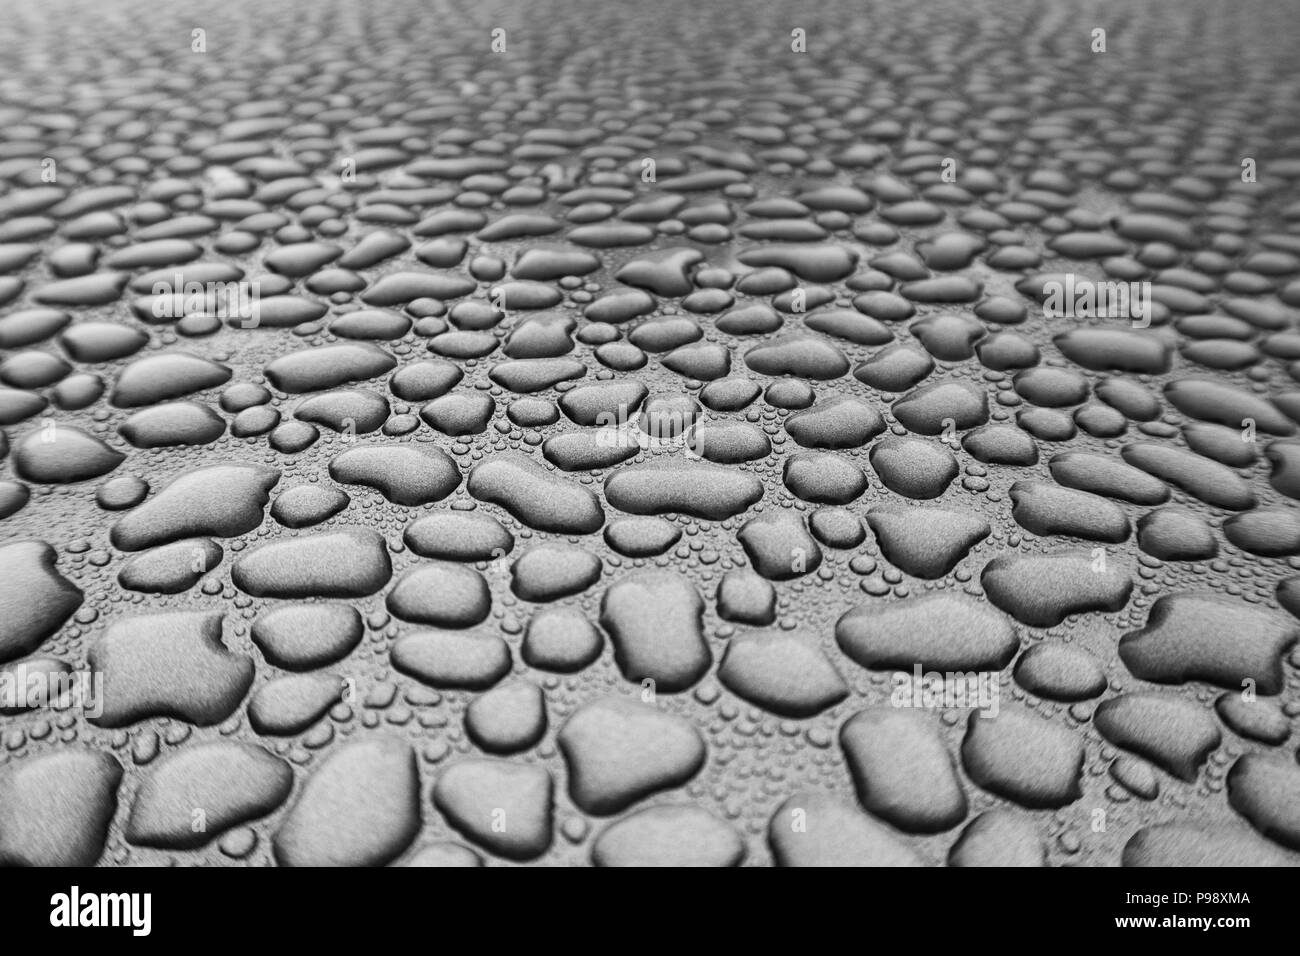 Regenwasser hat unzählige einzelne Perlen von Wasser, die angezeigt werden, versammelt zu haben und in der Ferne verblassen gebildet Stockfoto